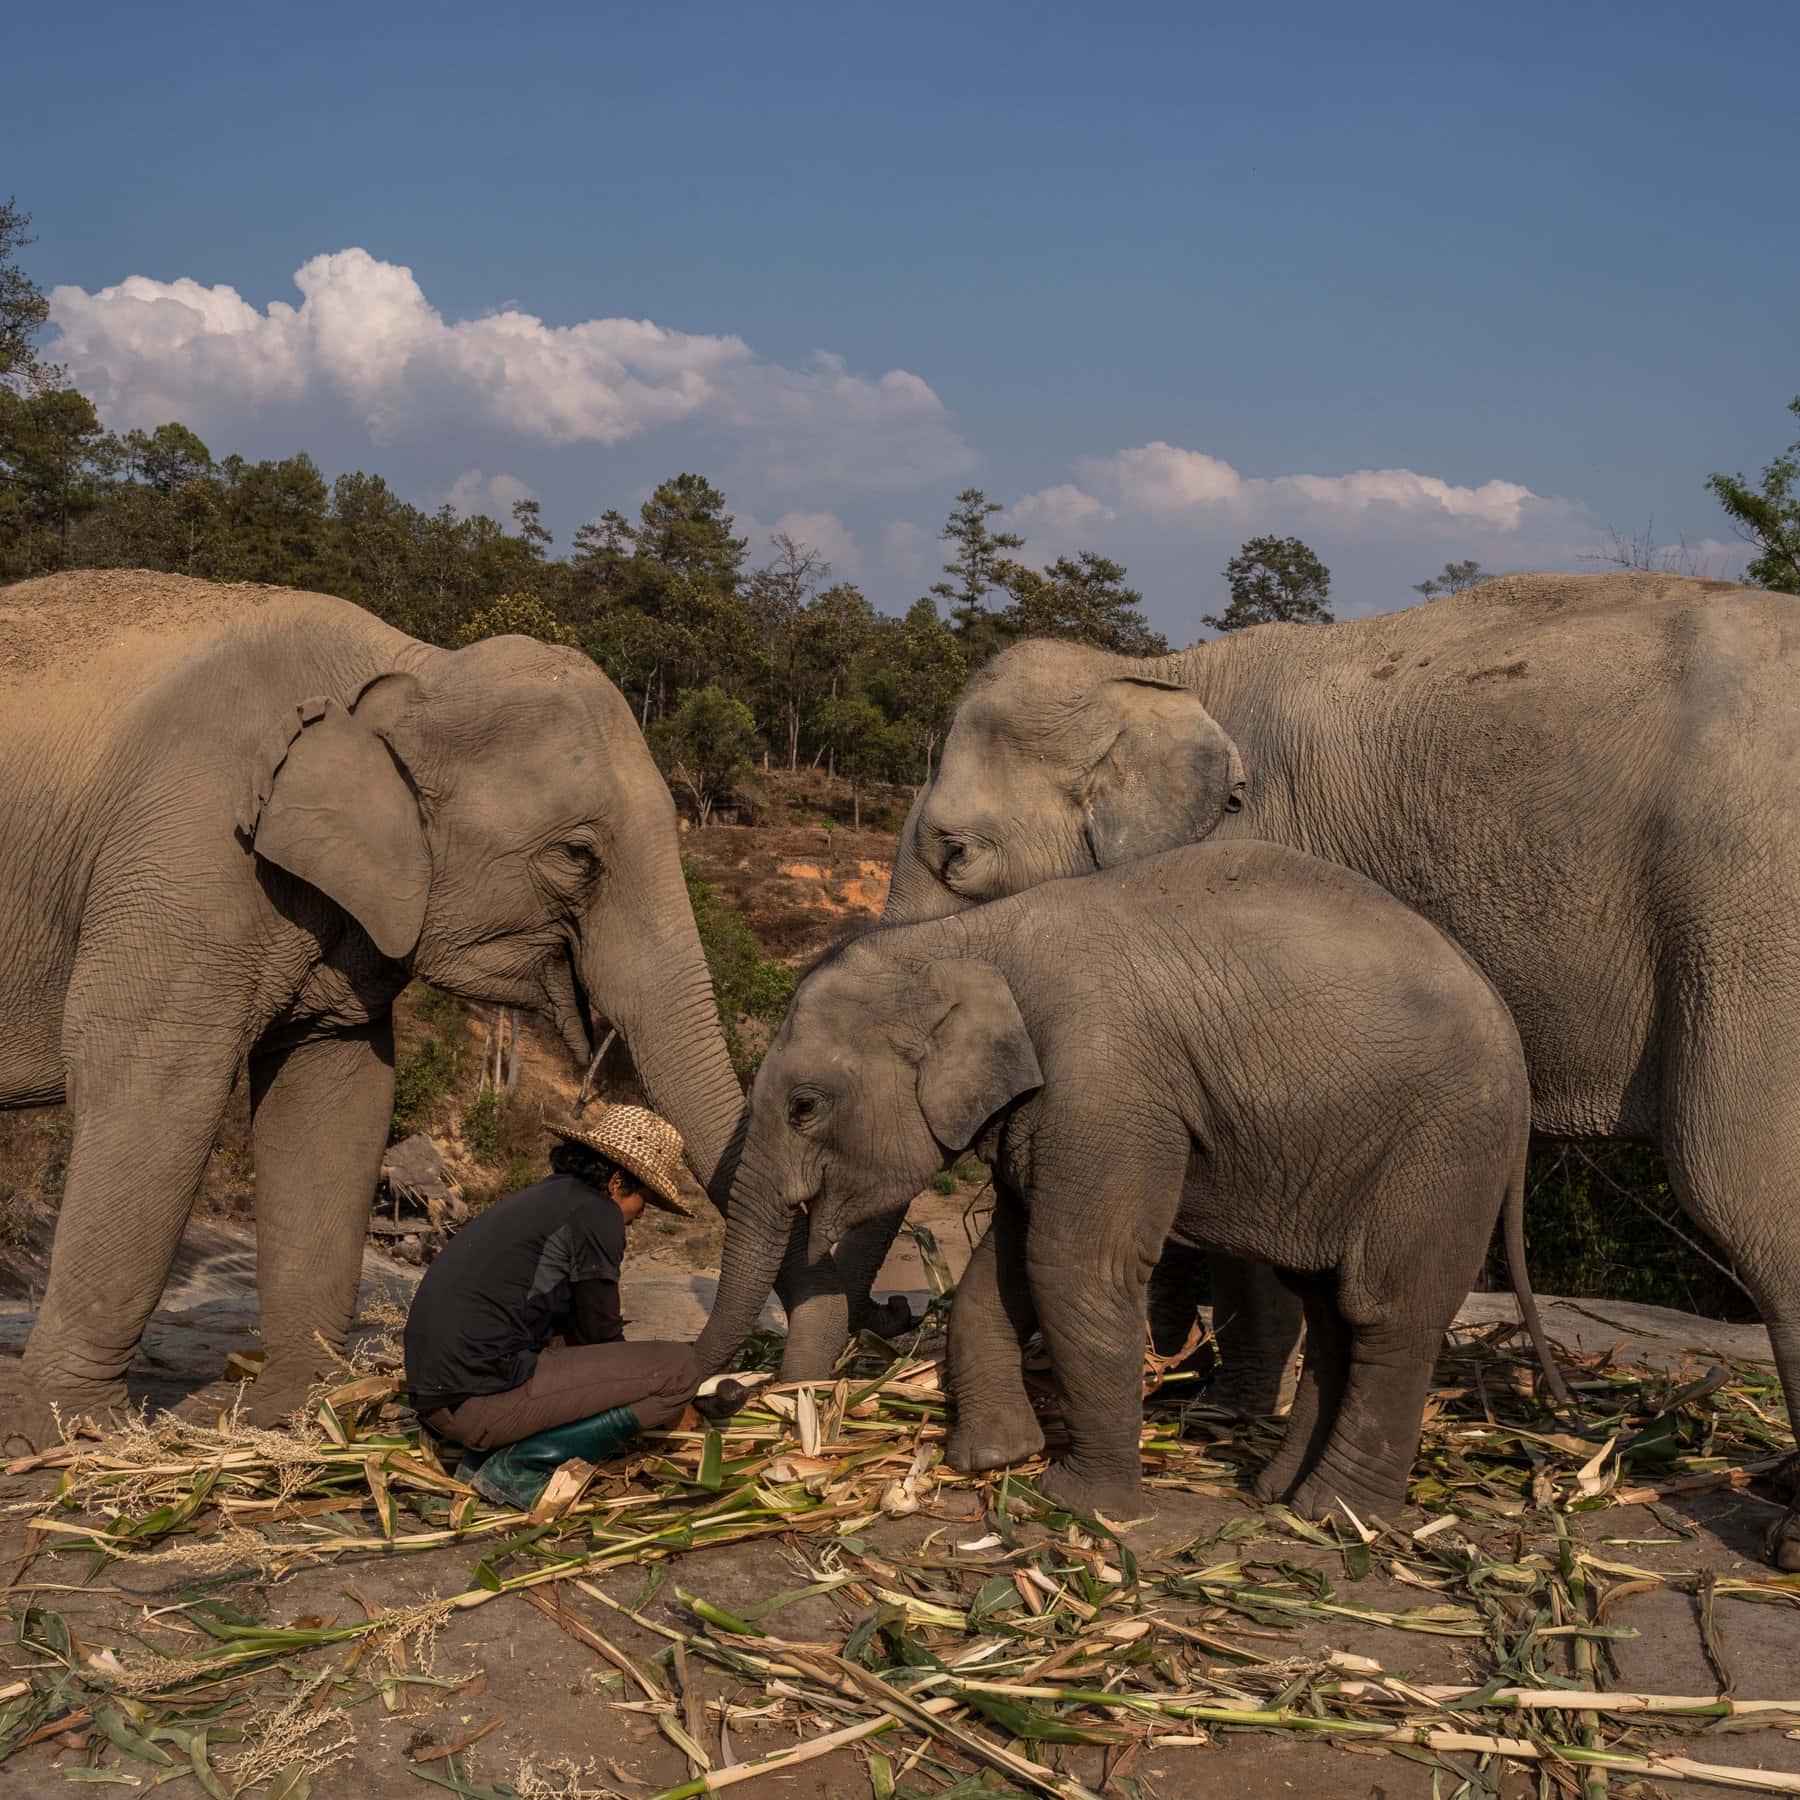 Imagende Un Bebé Elefante Comiendo